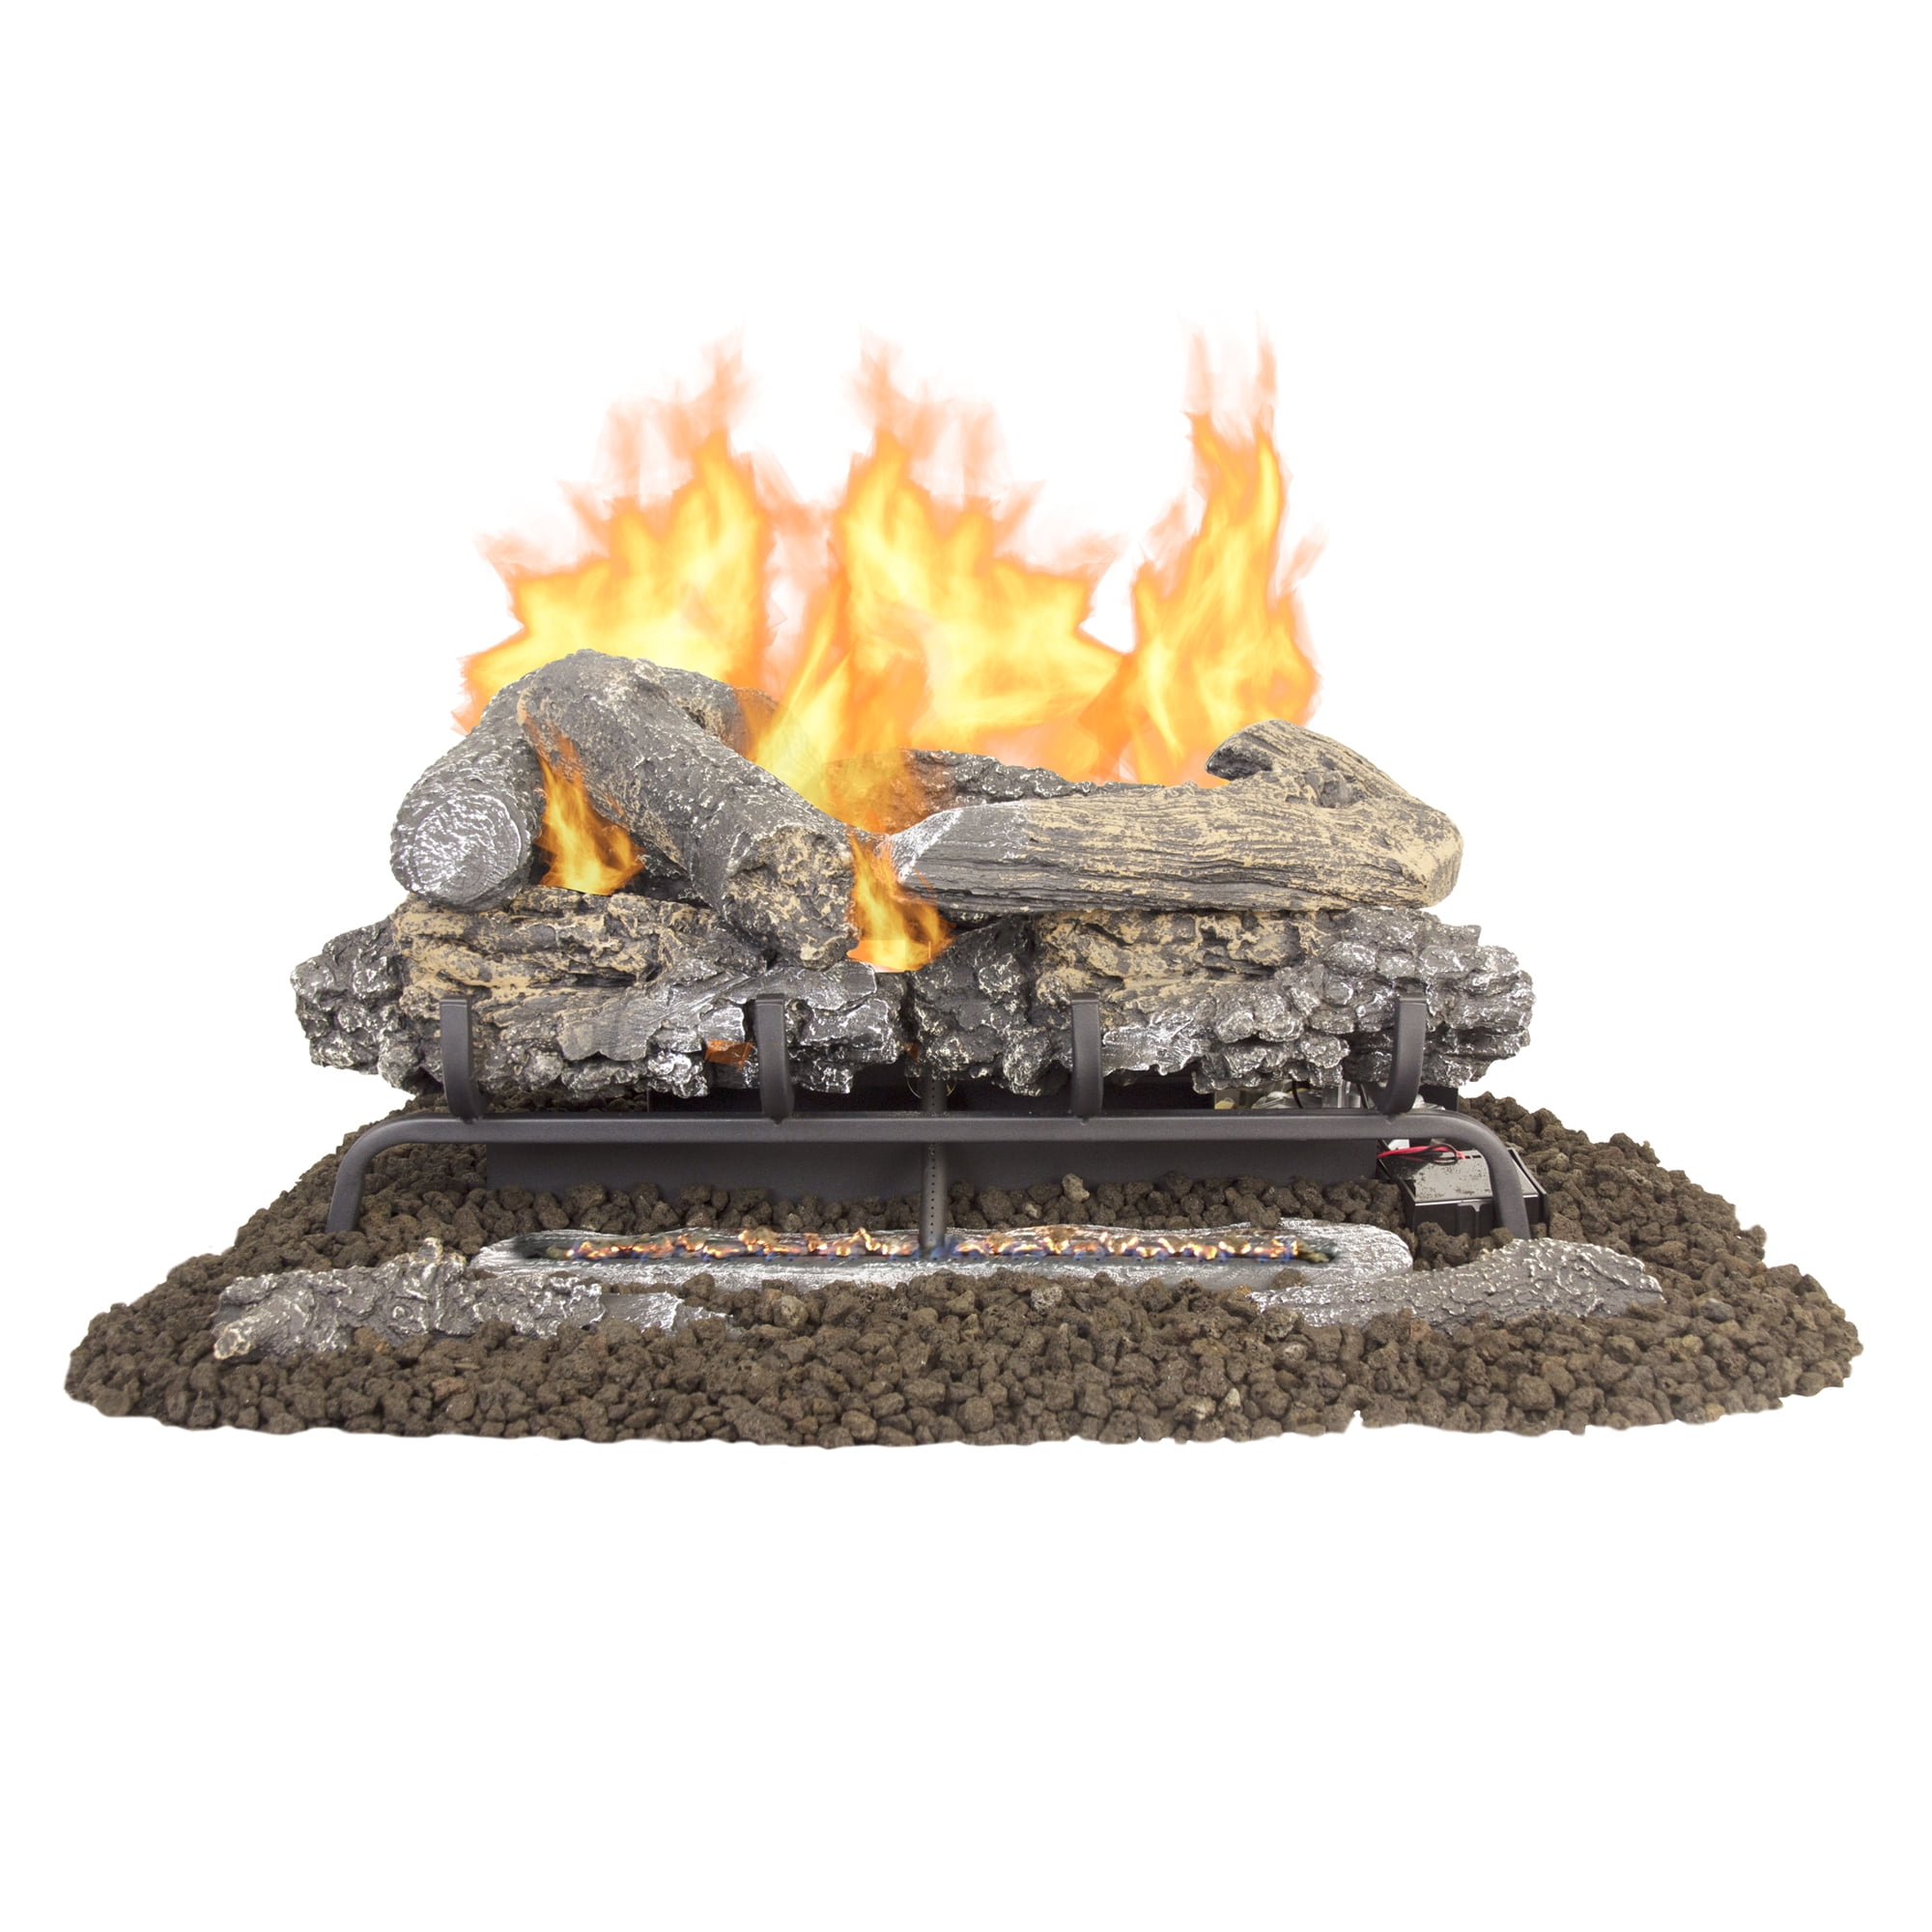 24 In Split Oak Vented Natural Gas Log Set Dual Burner Chimney Fireplace Fire 